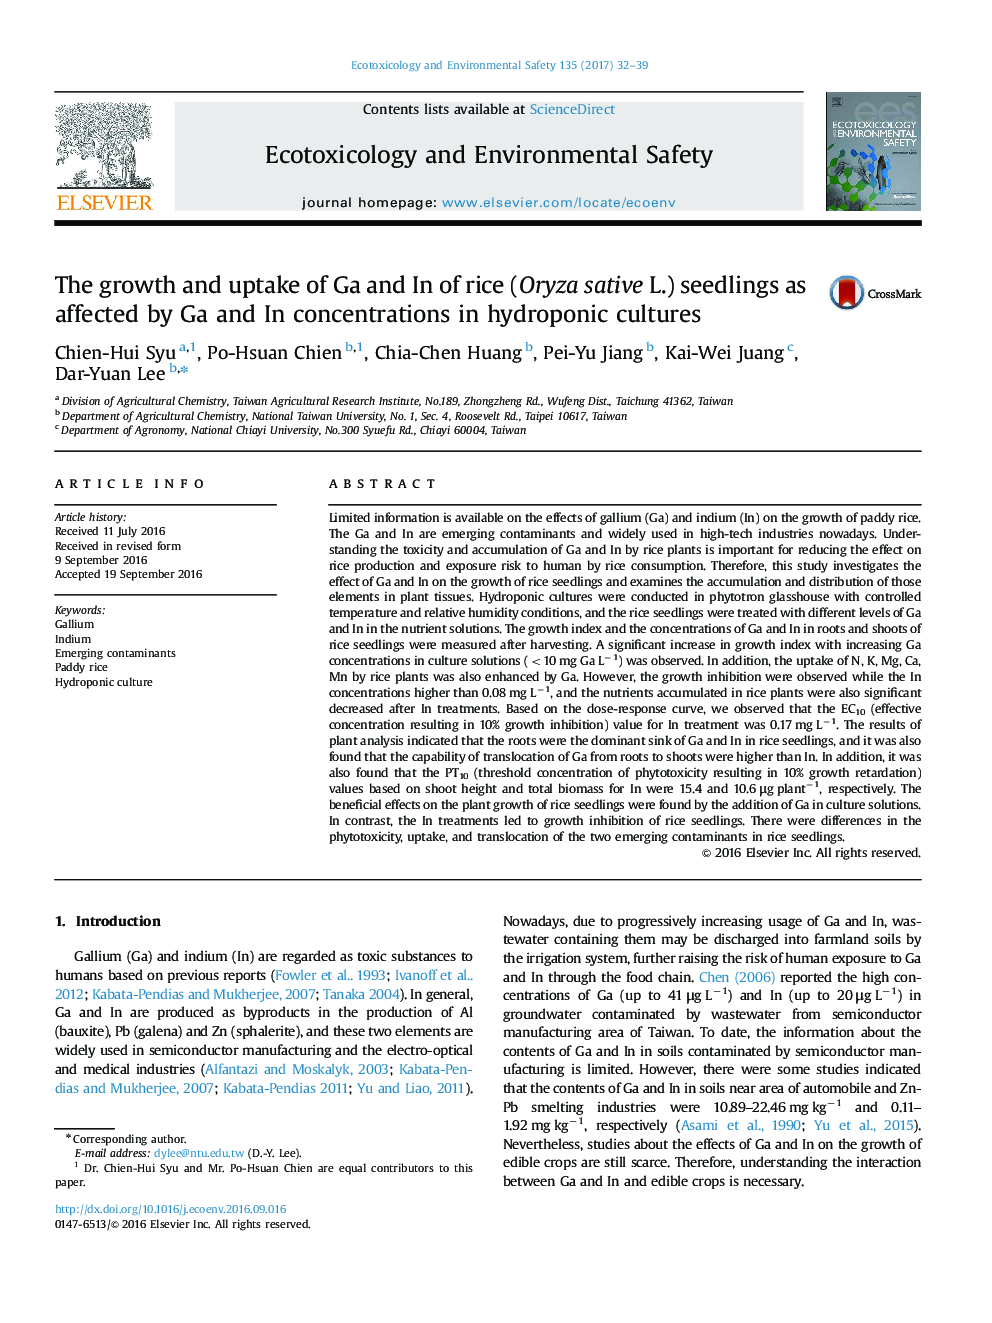 رشد و جذب عناصر نهال های گالیم و برنج (Oryza sative L.) تحت تأثیر با غلظت گالیم در کشت هیدروپونیک 